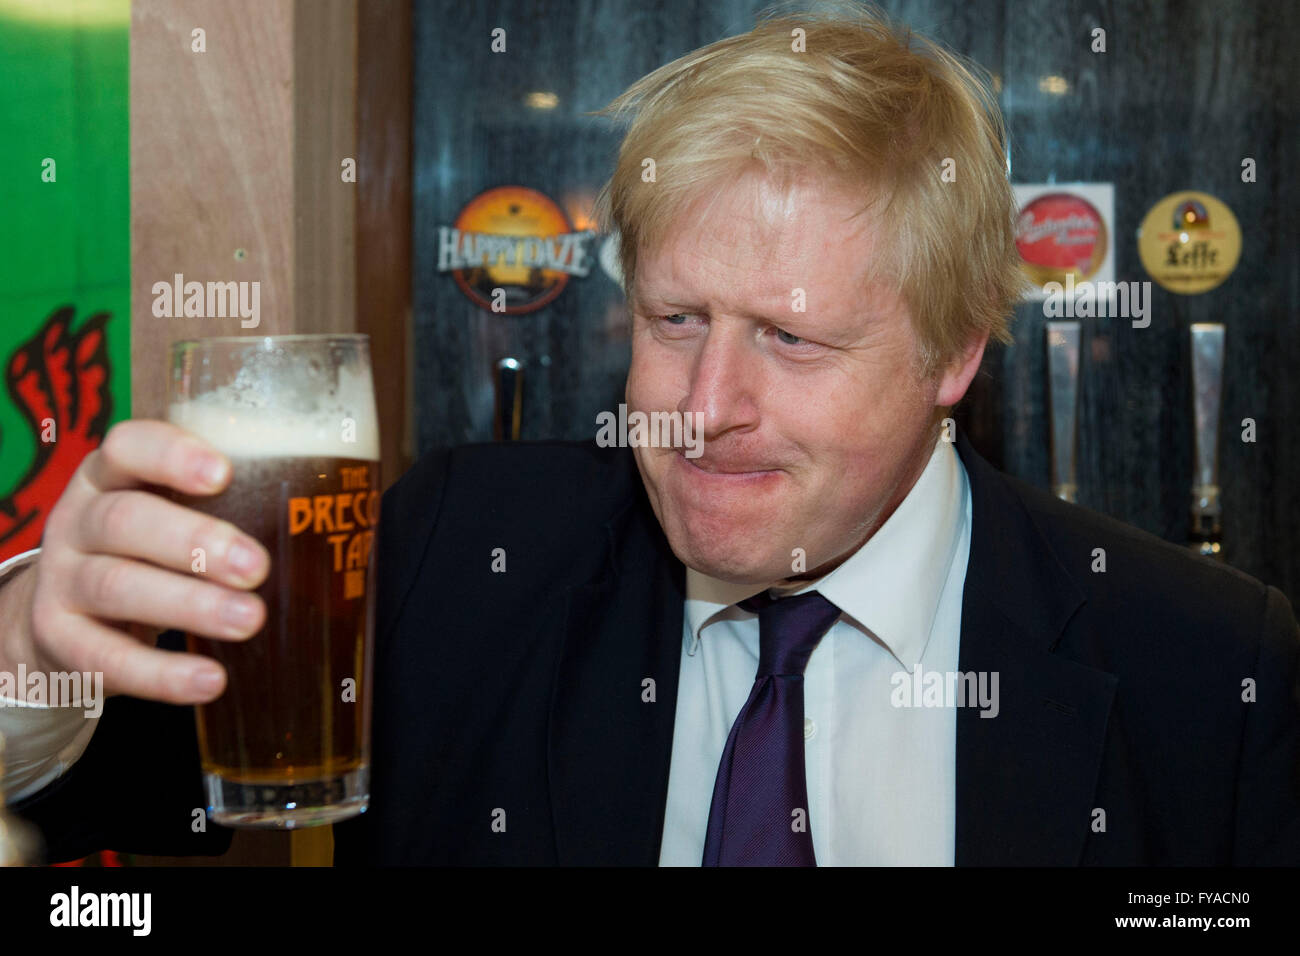 Boris Johnson, secrétaire aux affaires étrangères et député tenant une pinte de bière dans un pub. Banque D'Images